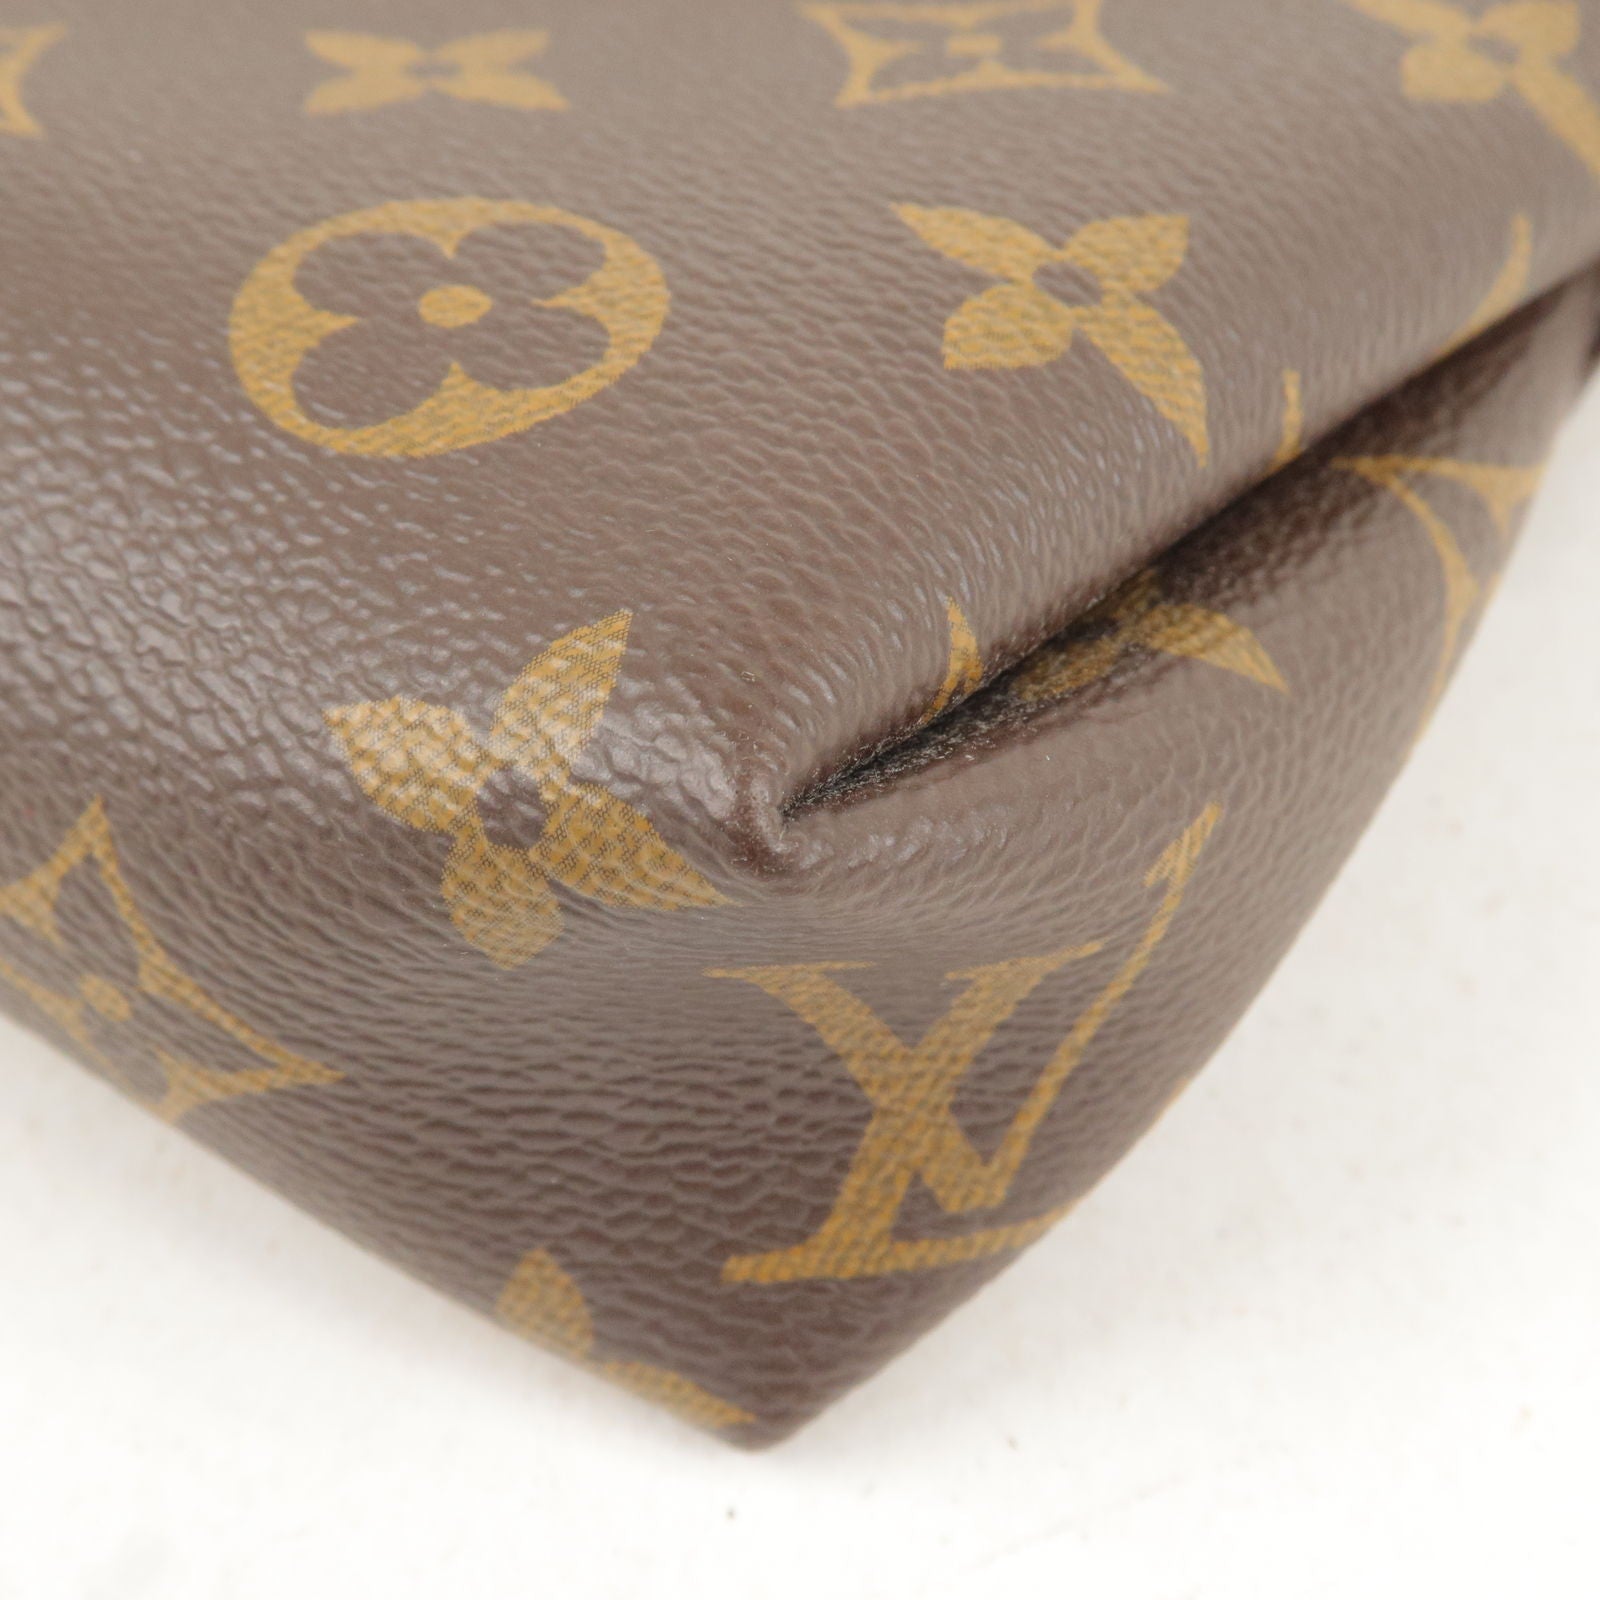 Authemtic Louis Vuitton Pallas Clutch Monogram Cerise M41638 Genuine Bag  Japan